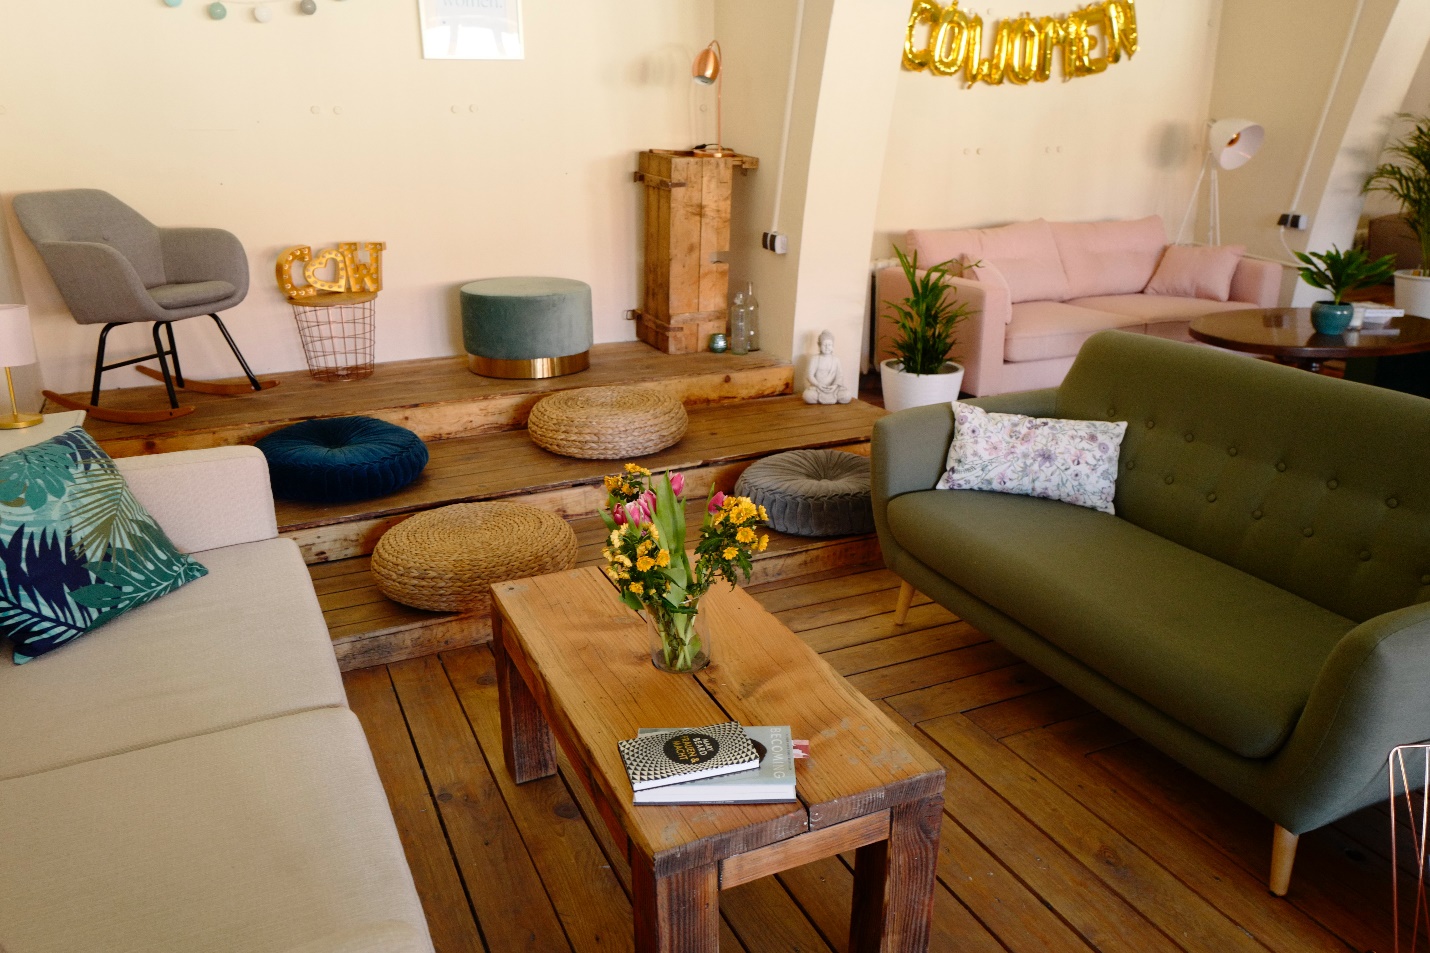 hình ảnh phòng khách nhỏ với ghế sofa màu xanh lá, bàn trà gỗ hình chữ nhật, đệm ngội trên sàn, ghế tựa màu xám